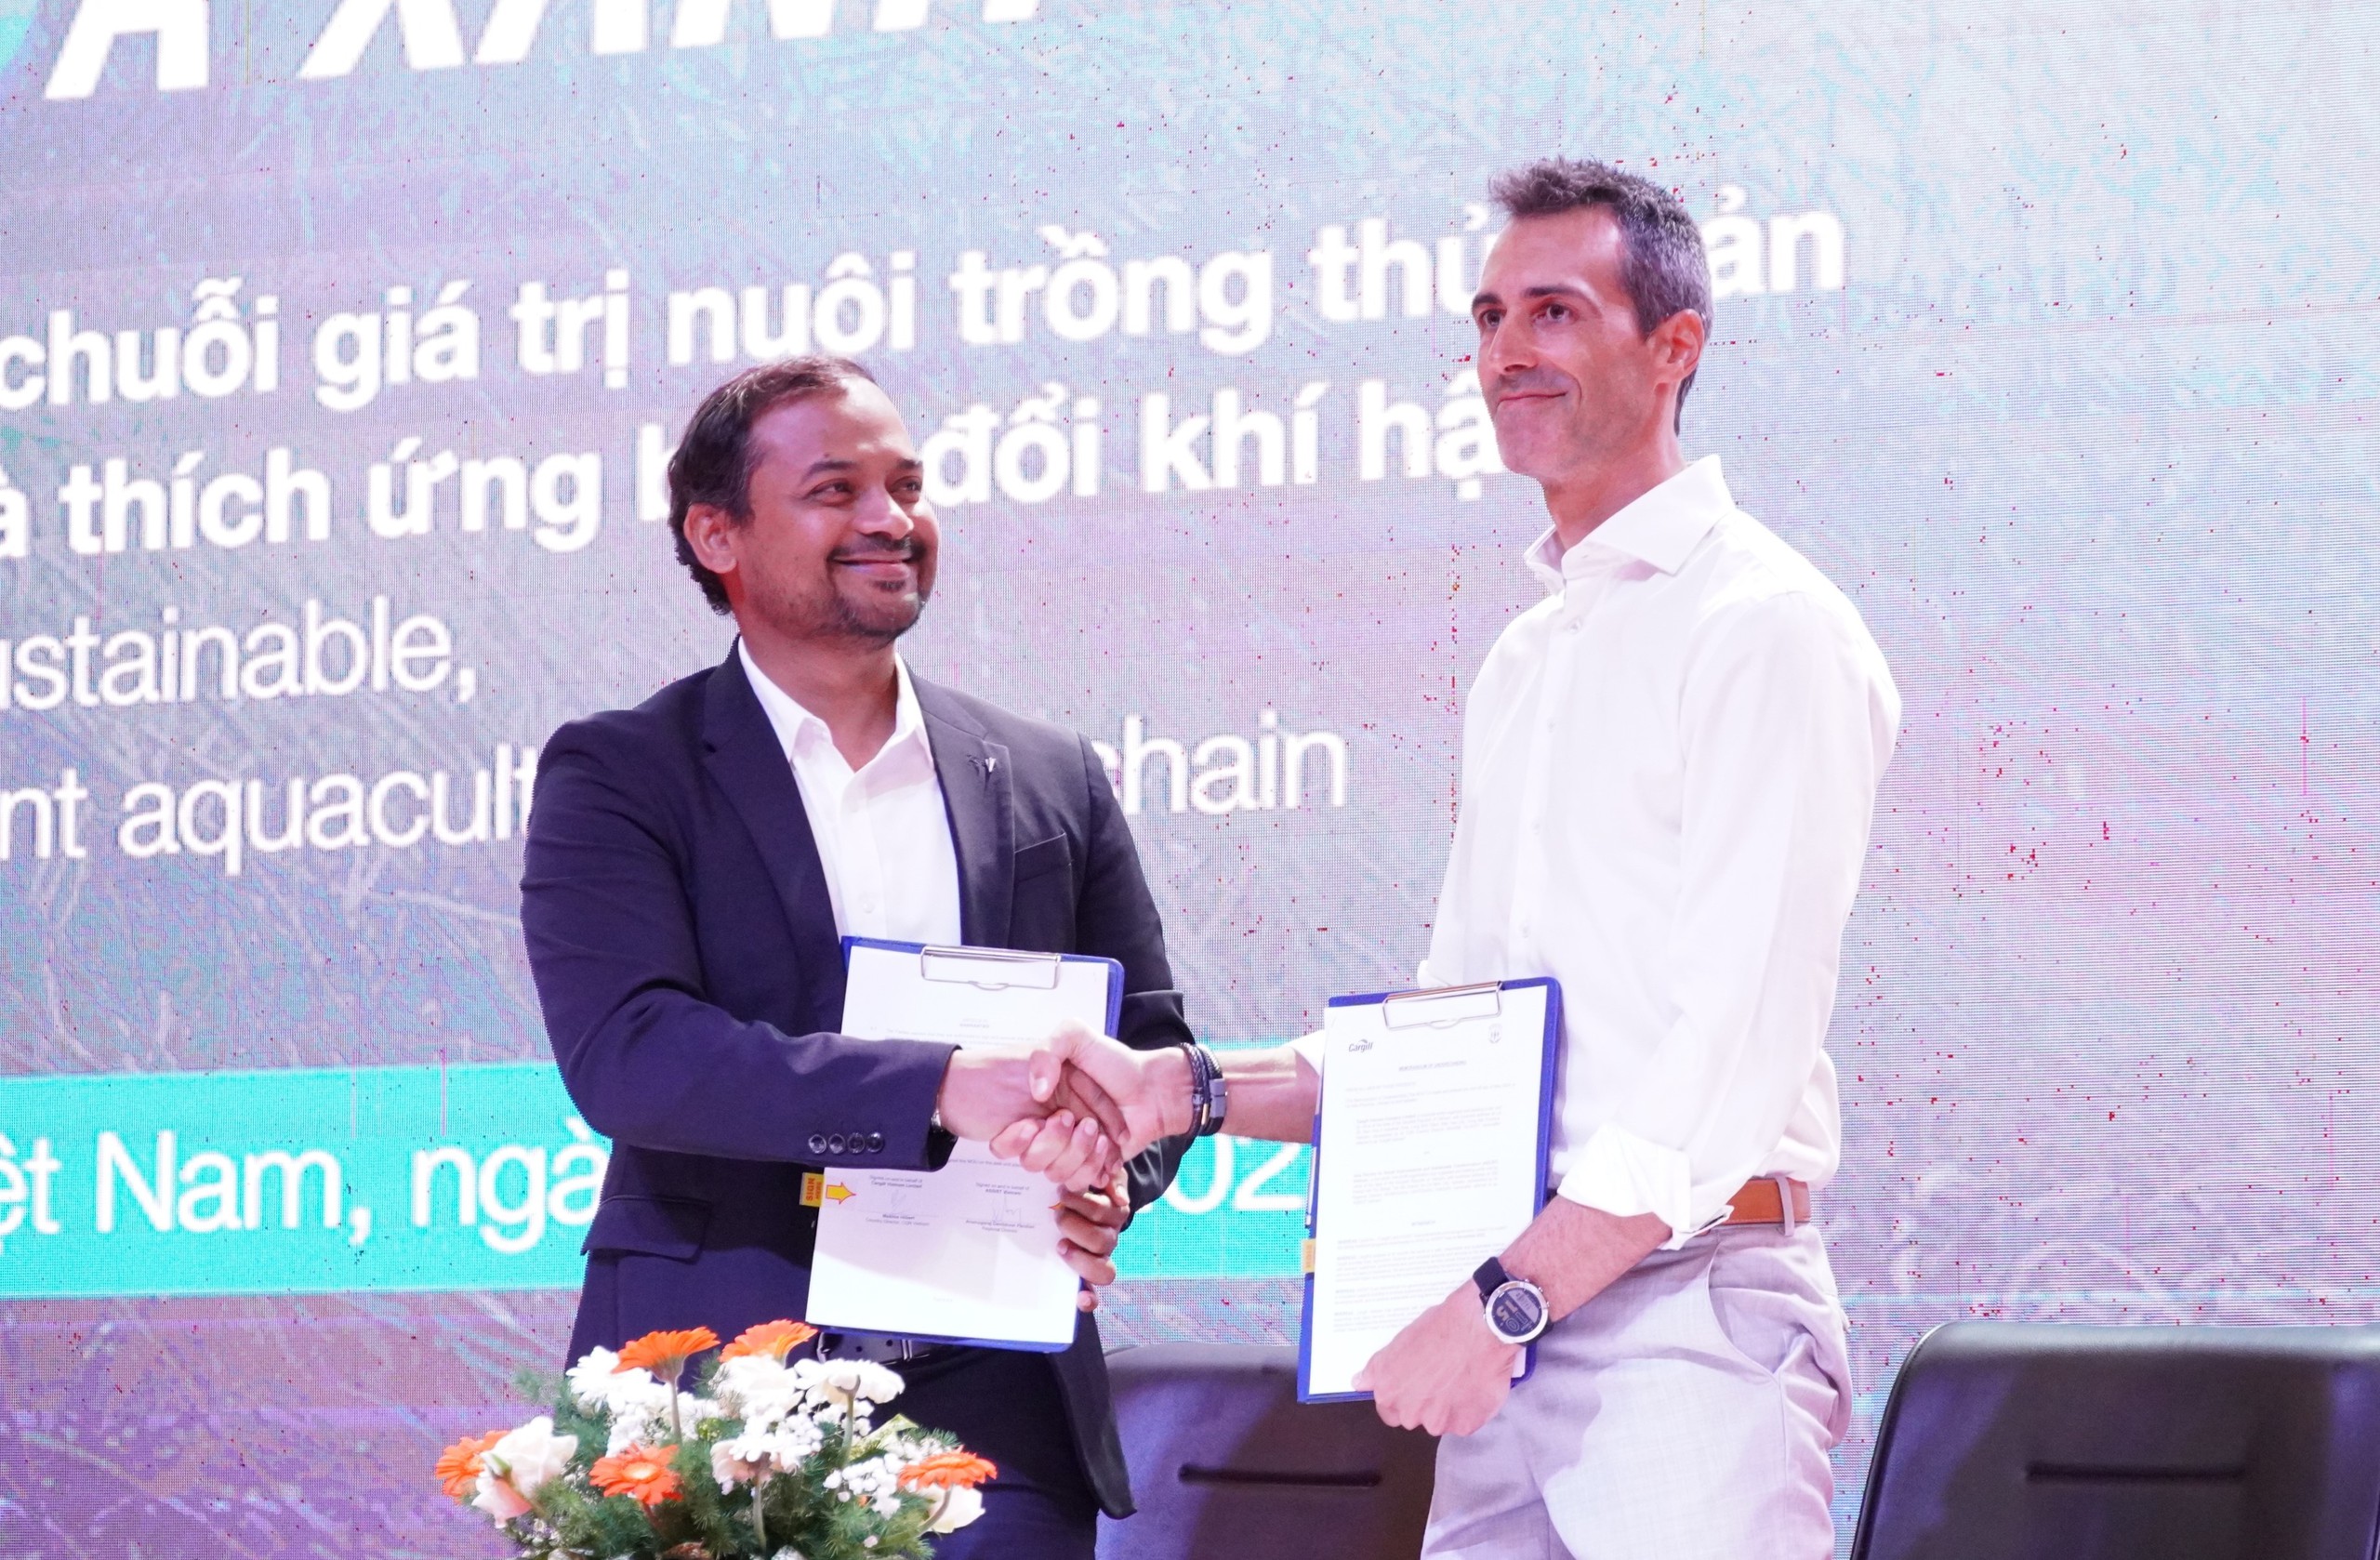 Ông Maxime Hilbert, Tổng giám đốc ngành dinh dưỡng Thủy sản Cargill Việt Nam (trái) và  Aru David, Giám đốc ASSIST Việt Nam, ký thỏa thuận triển khai dự án